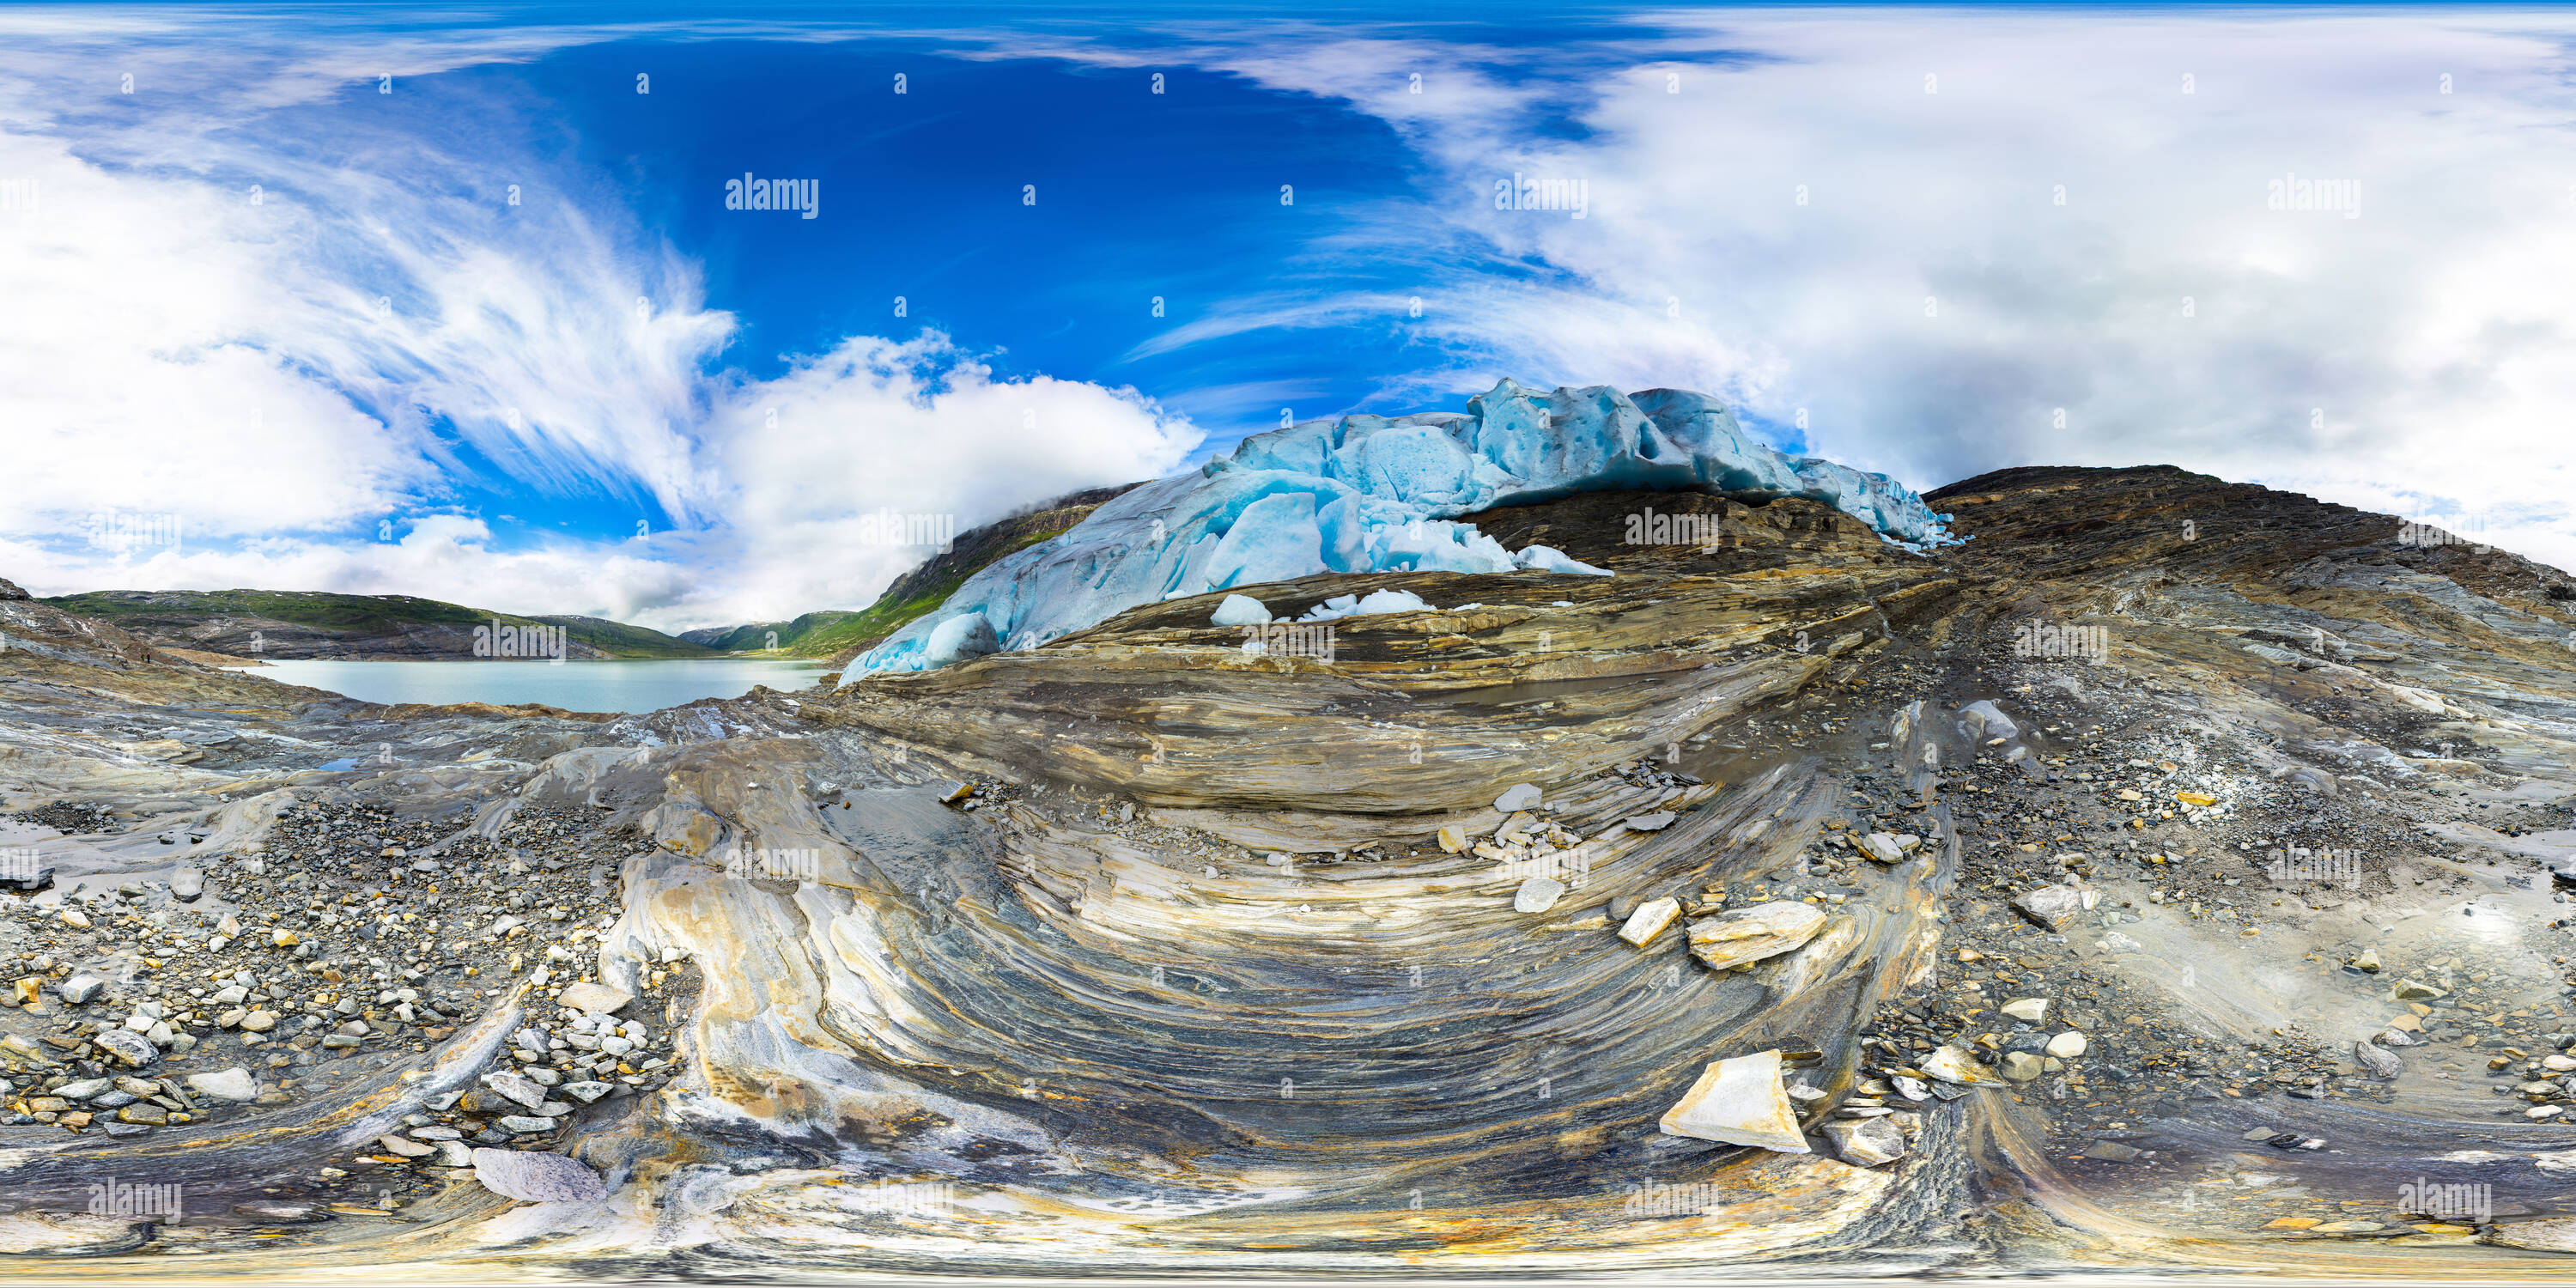 Vue panoramique à 360° de Svartisen Parc national des glaciers, la Norvège